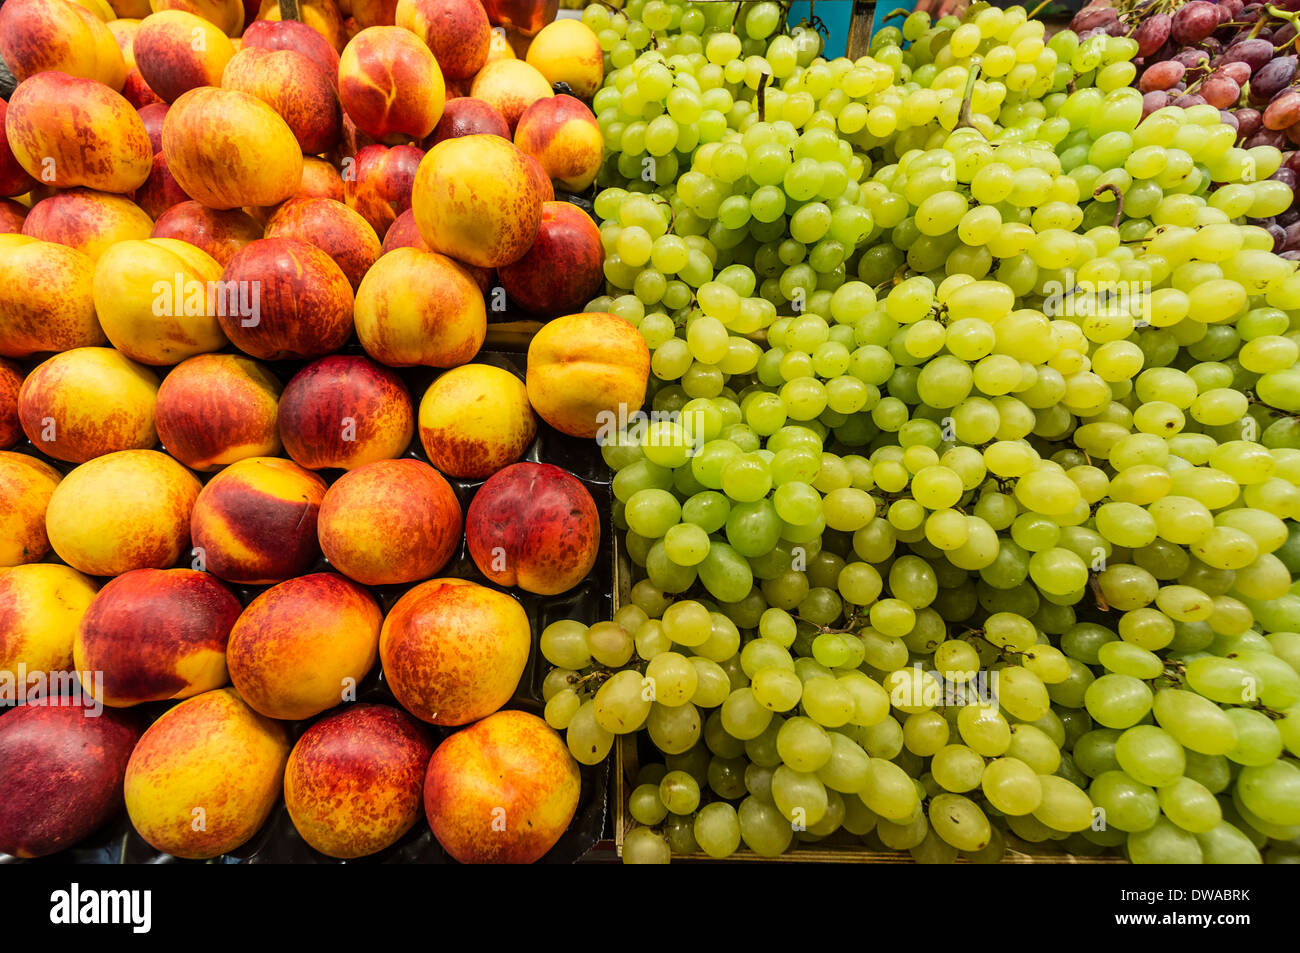 Fruits at La Boqueria Market in Barcelona, Spain Stock Photo